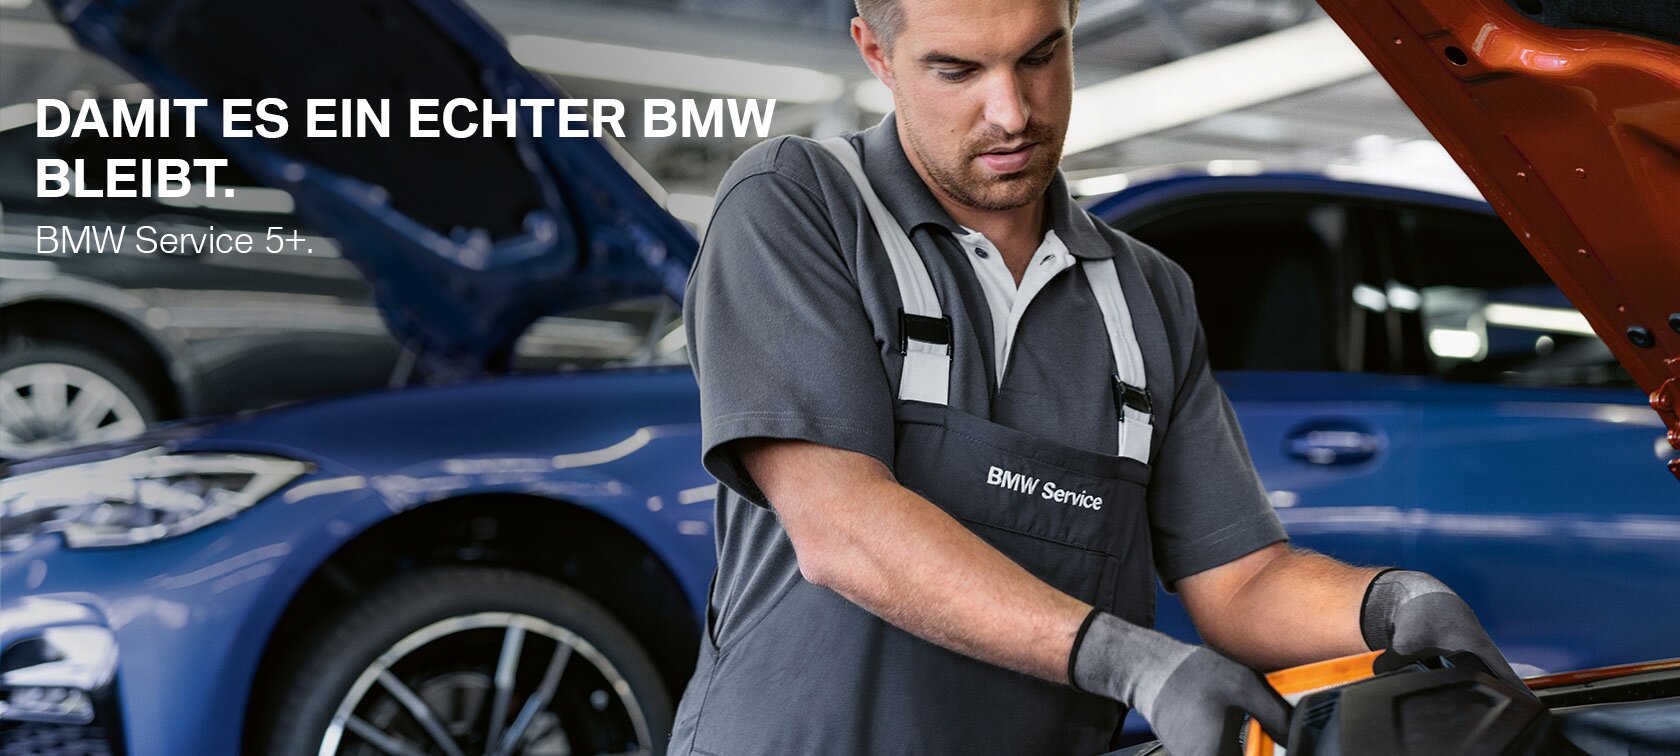 bmw_mechanik_slider - BMW Service 5+